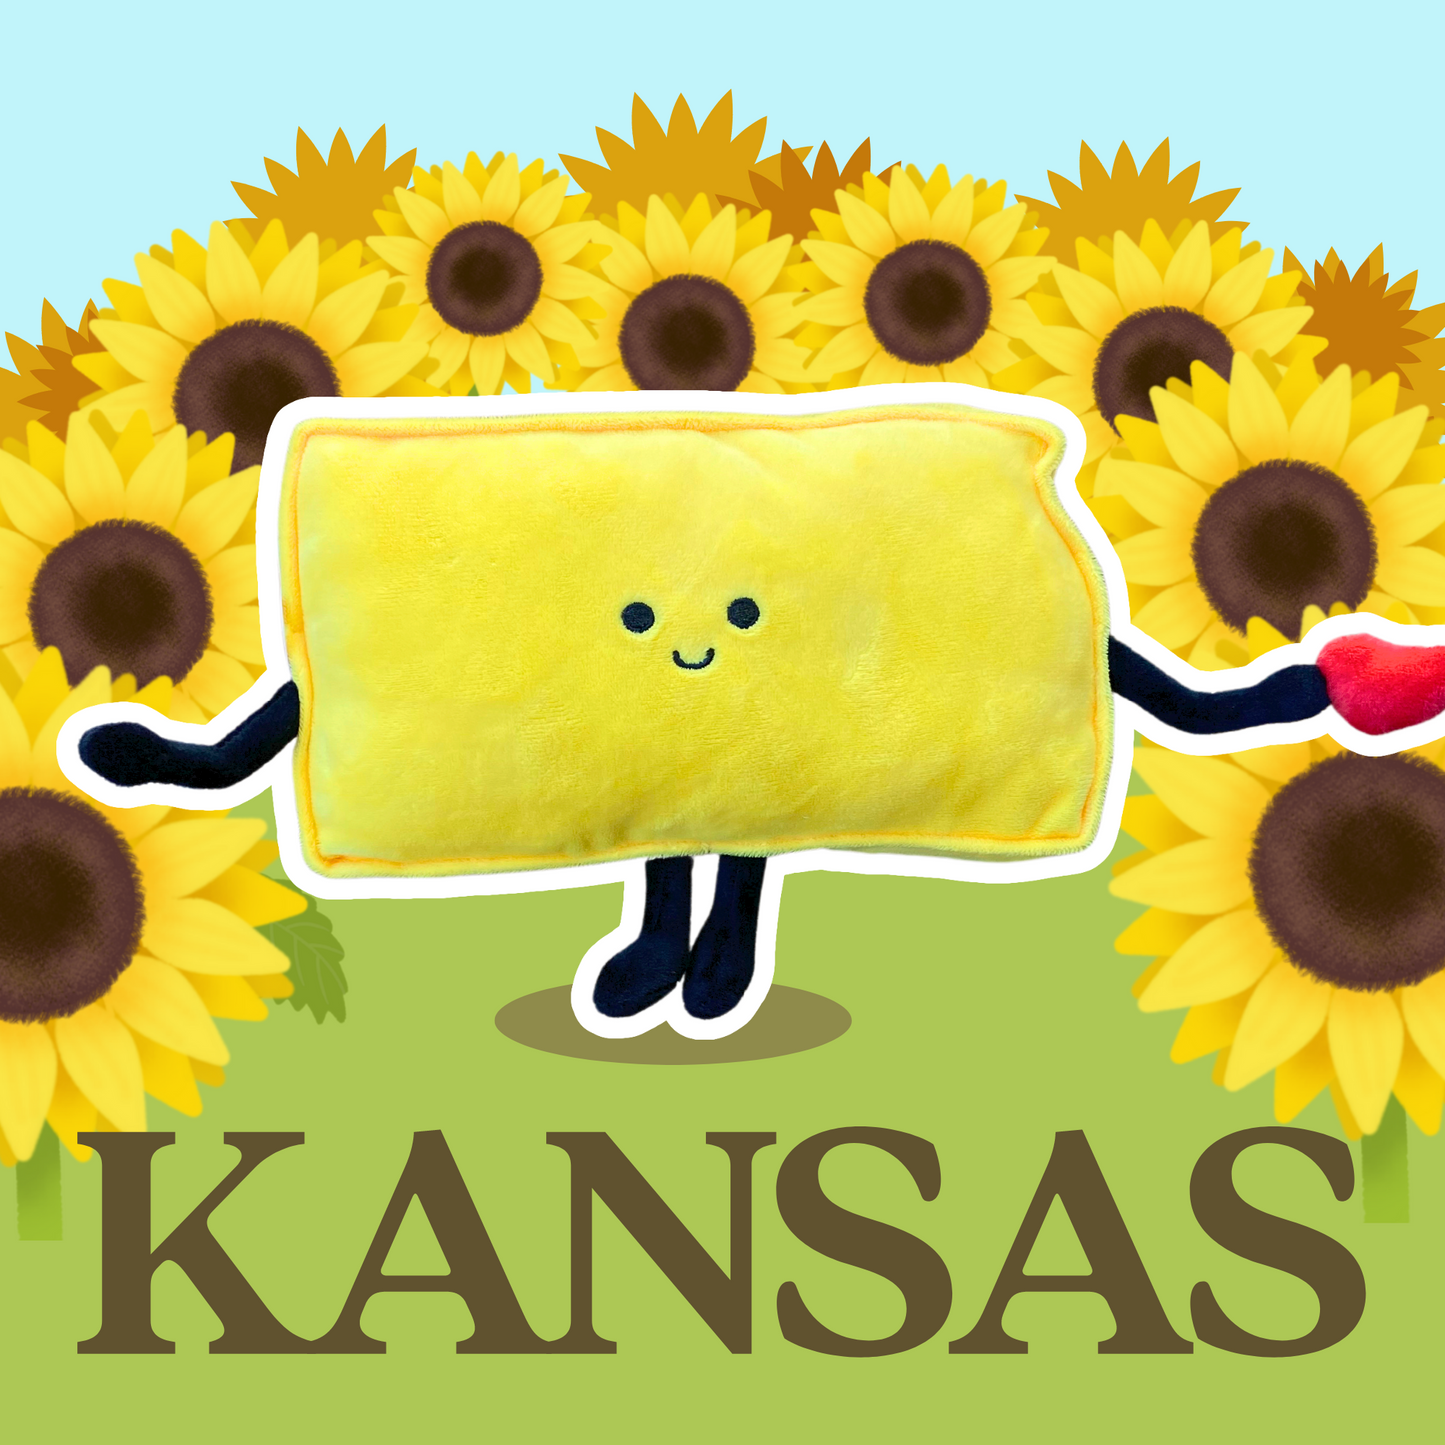 Kansas State Stuffed Plush